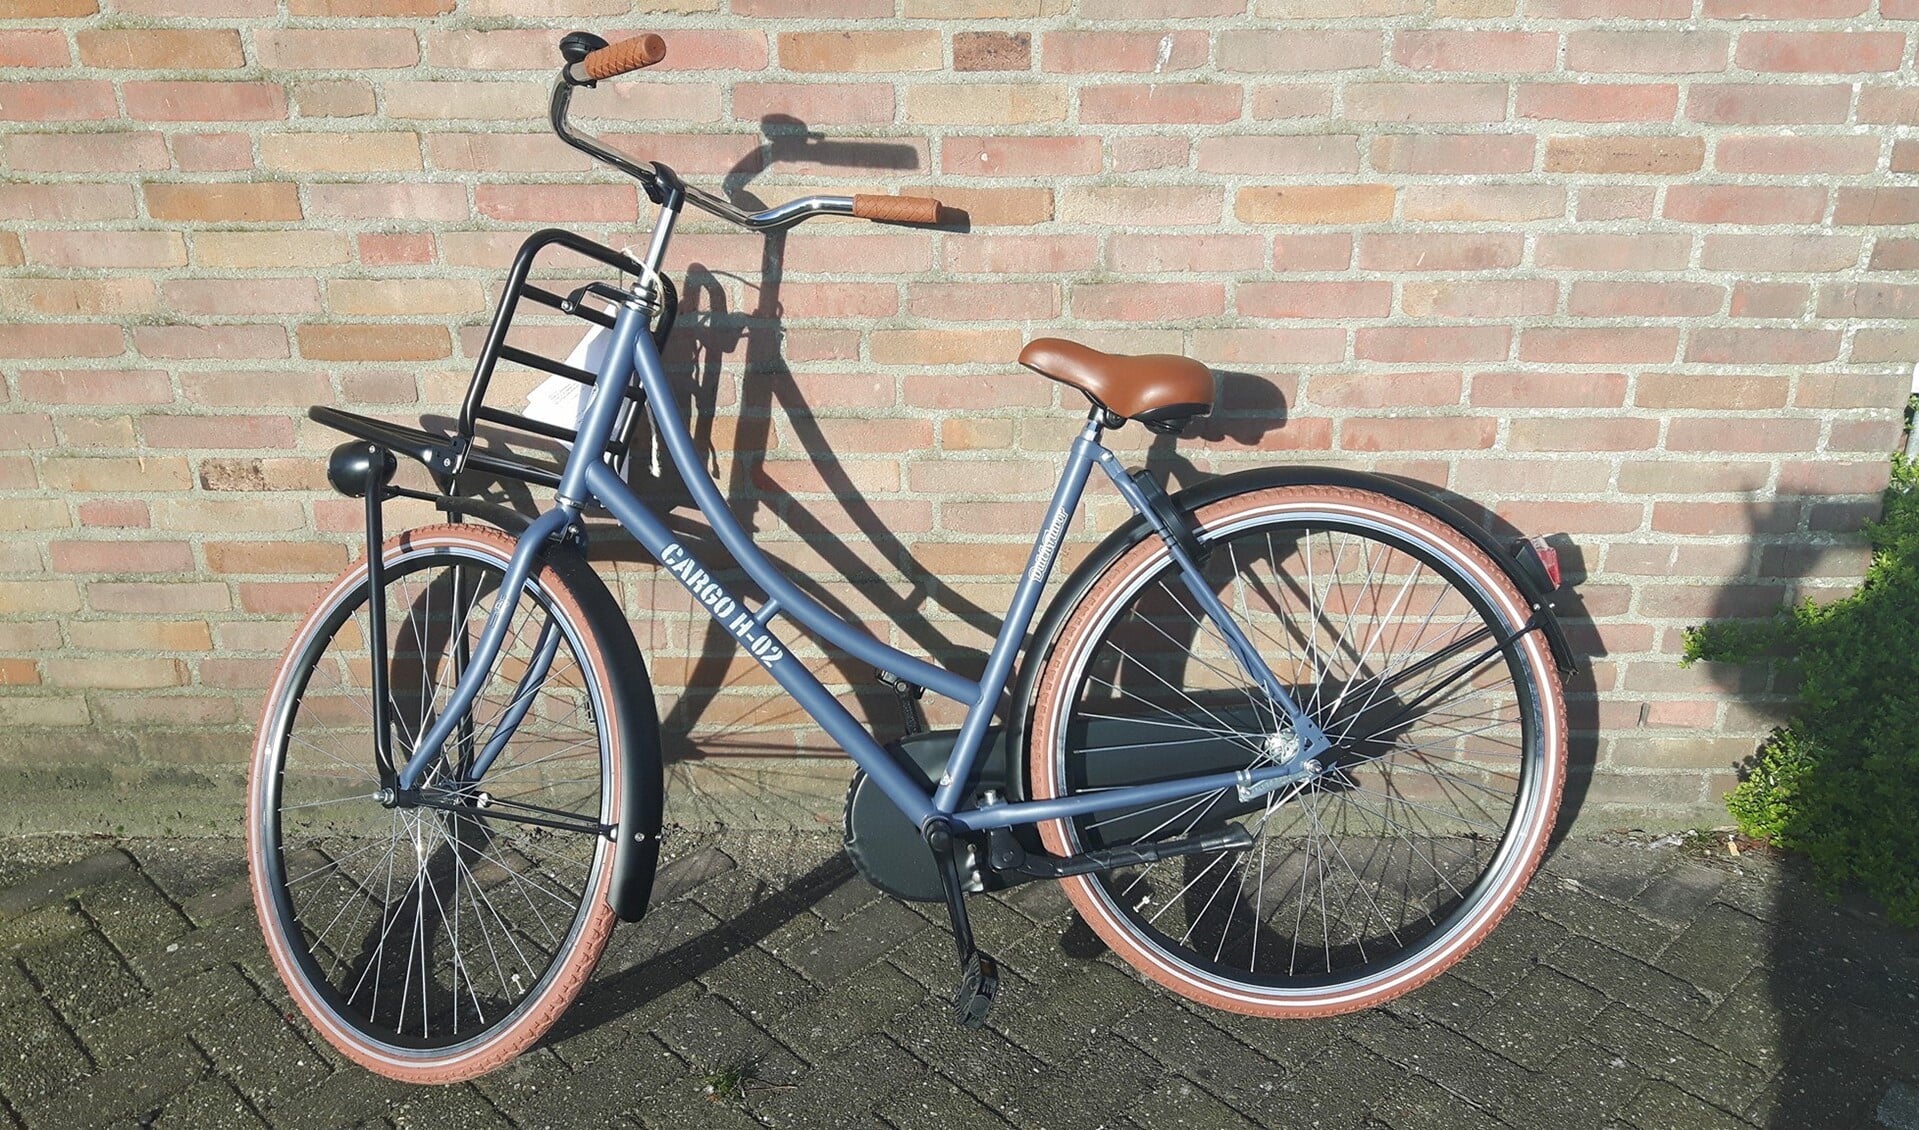 Herkent u deze fiets?